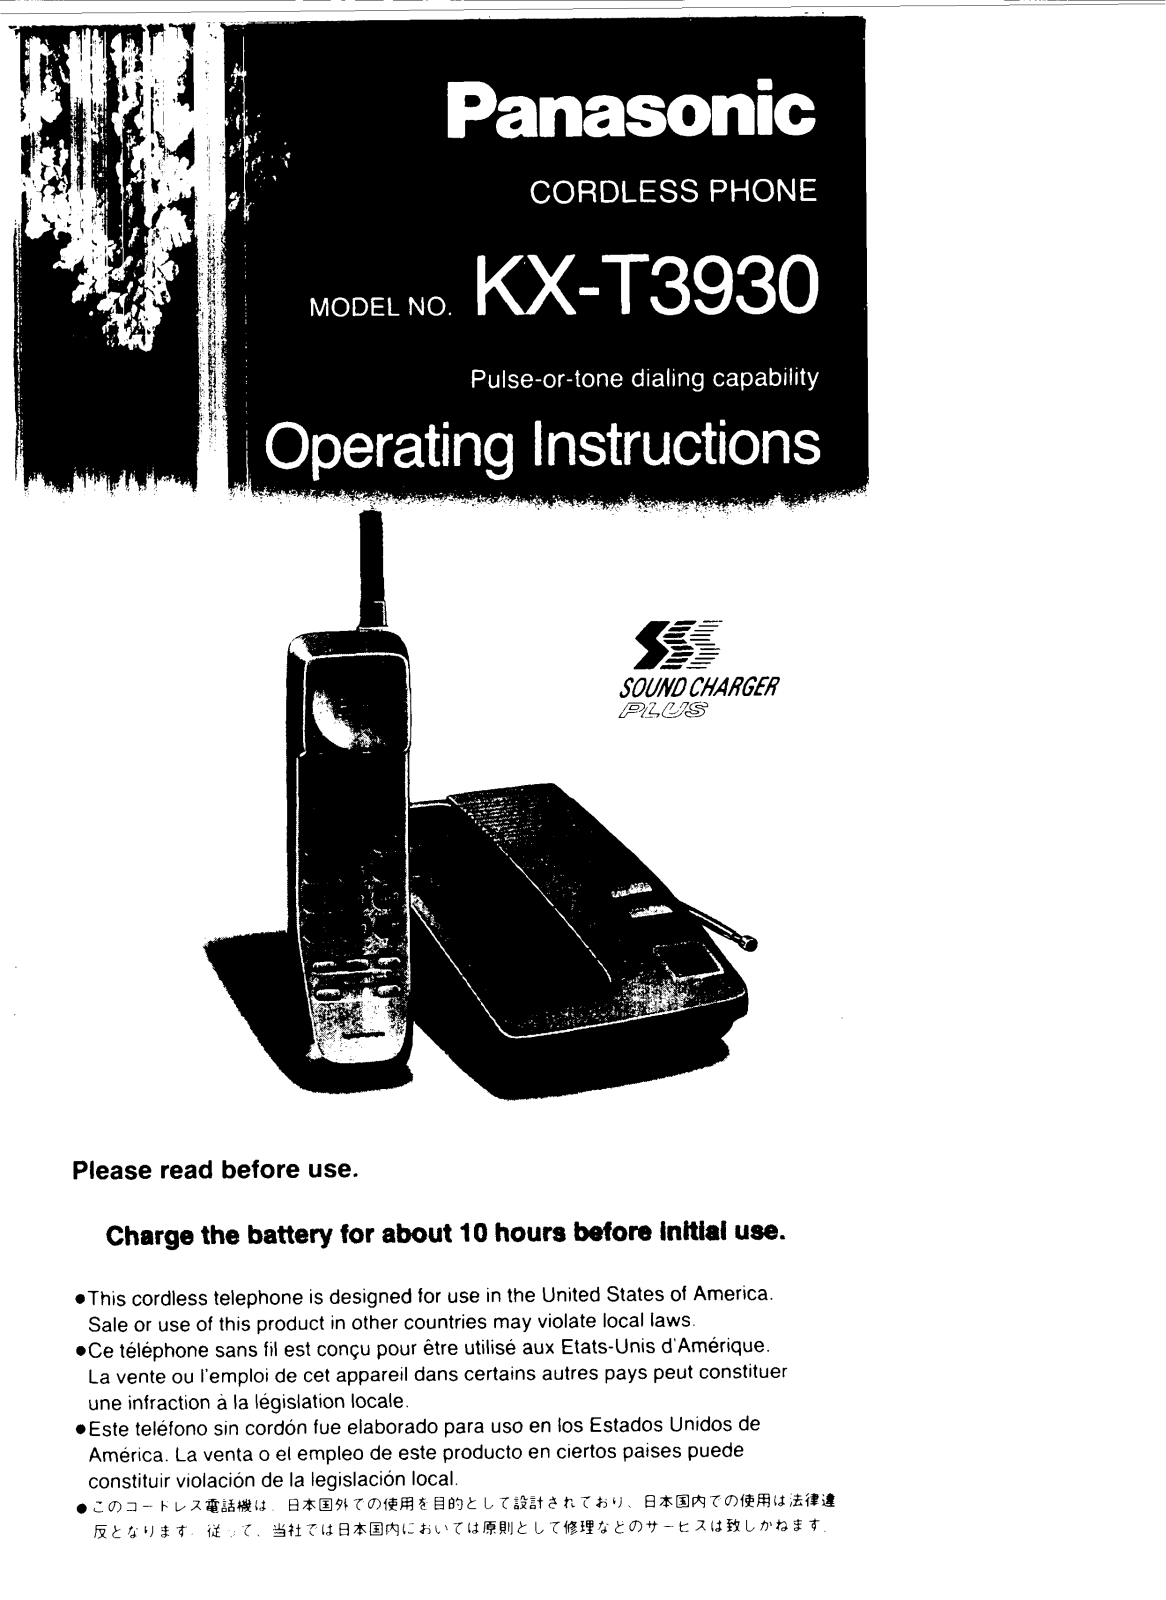 Panasonic kx-t3930 Operation Manual